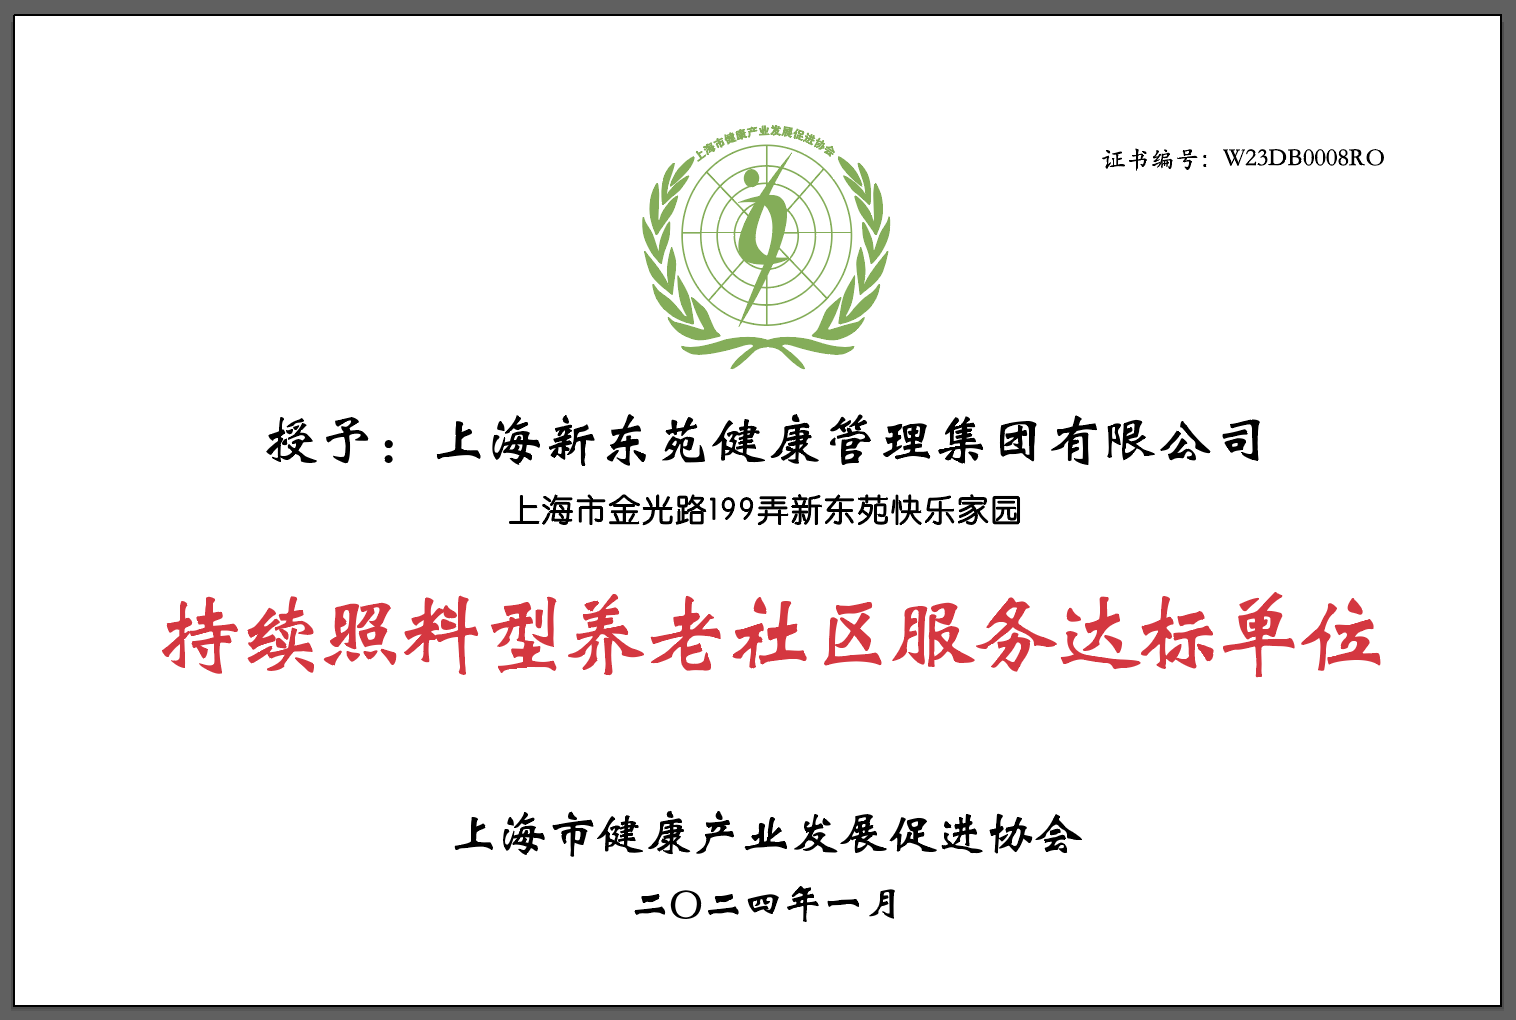 海新东苑健康管理集团有限公司顺利通过了世标认证/WSF持续照料型养老社区服务能力符合达标评审(图1)